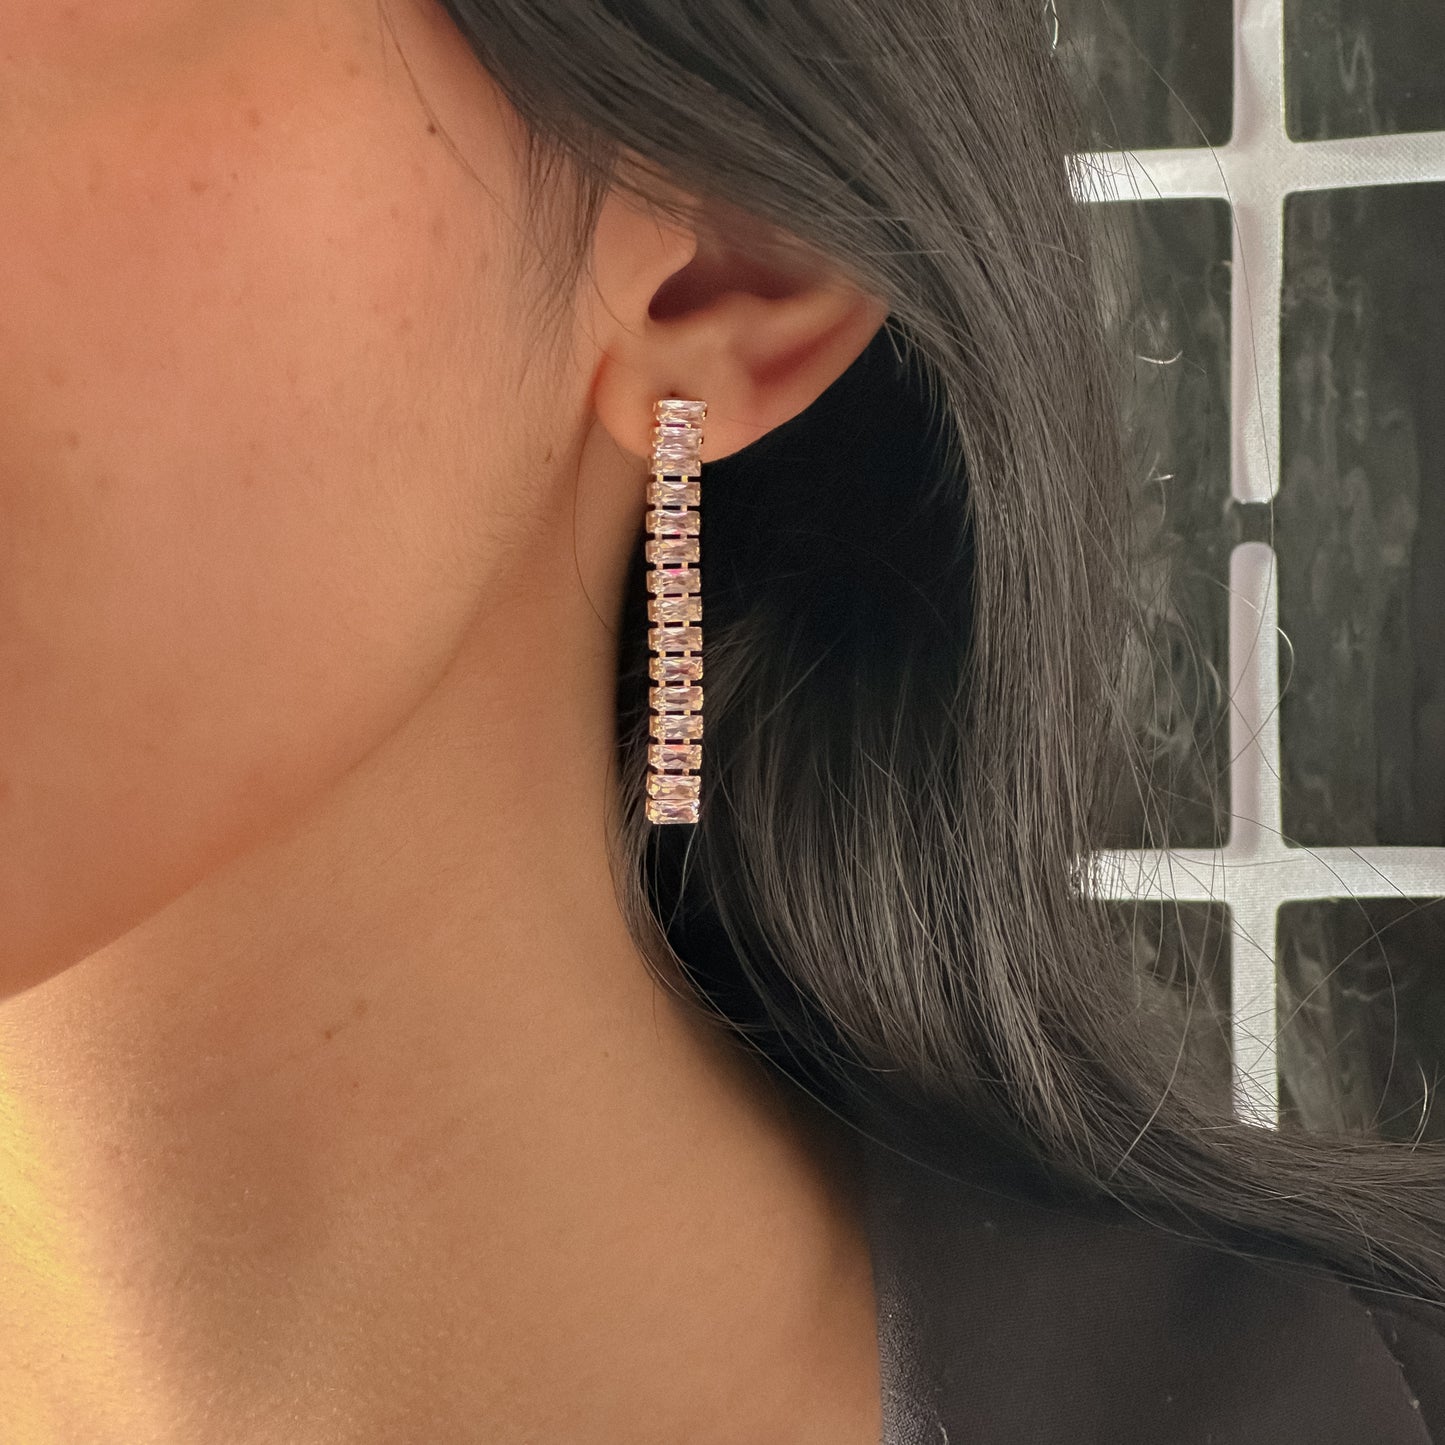 Dazzle earrings